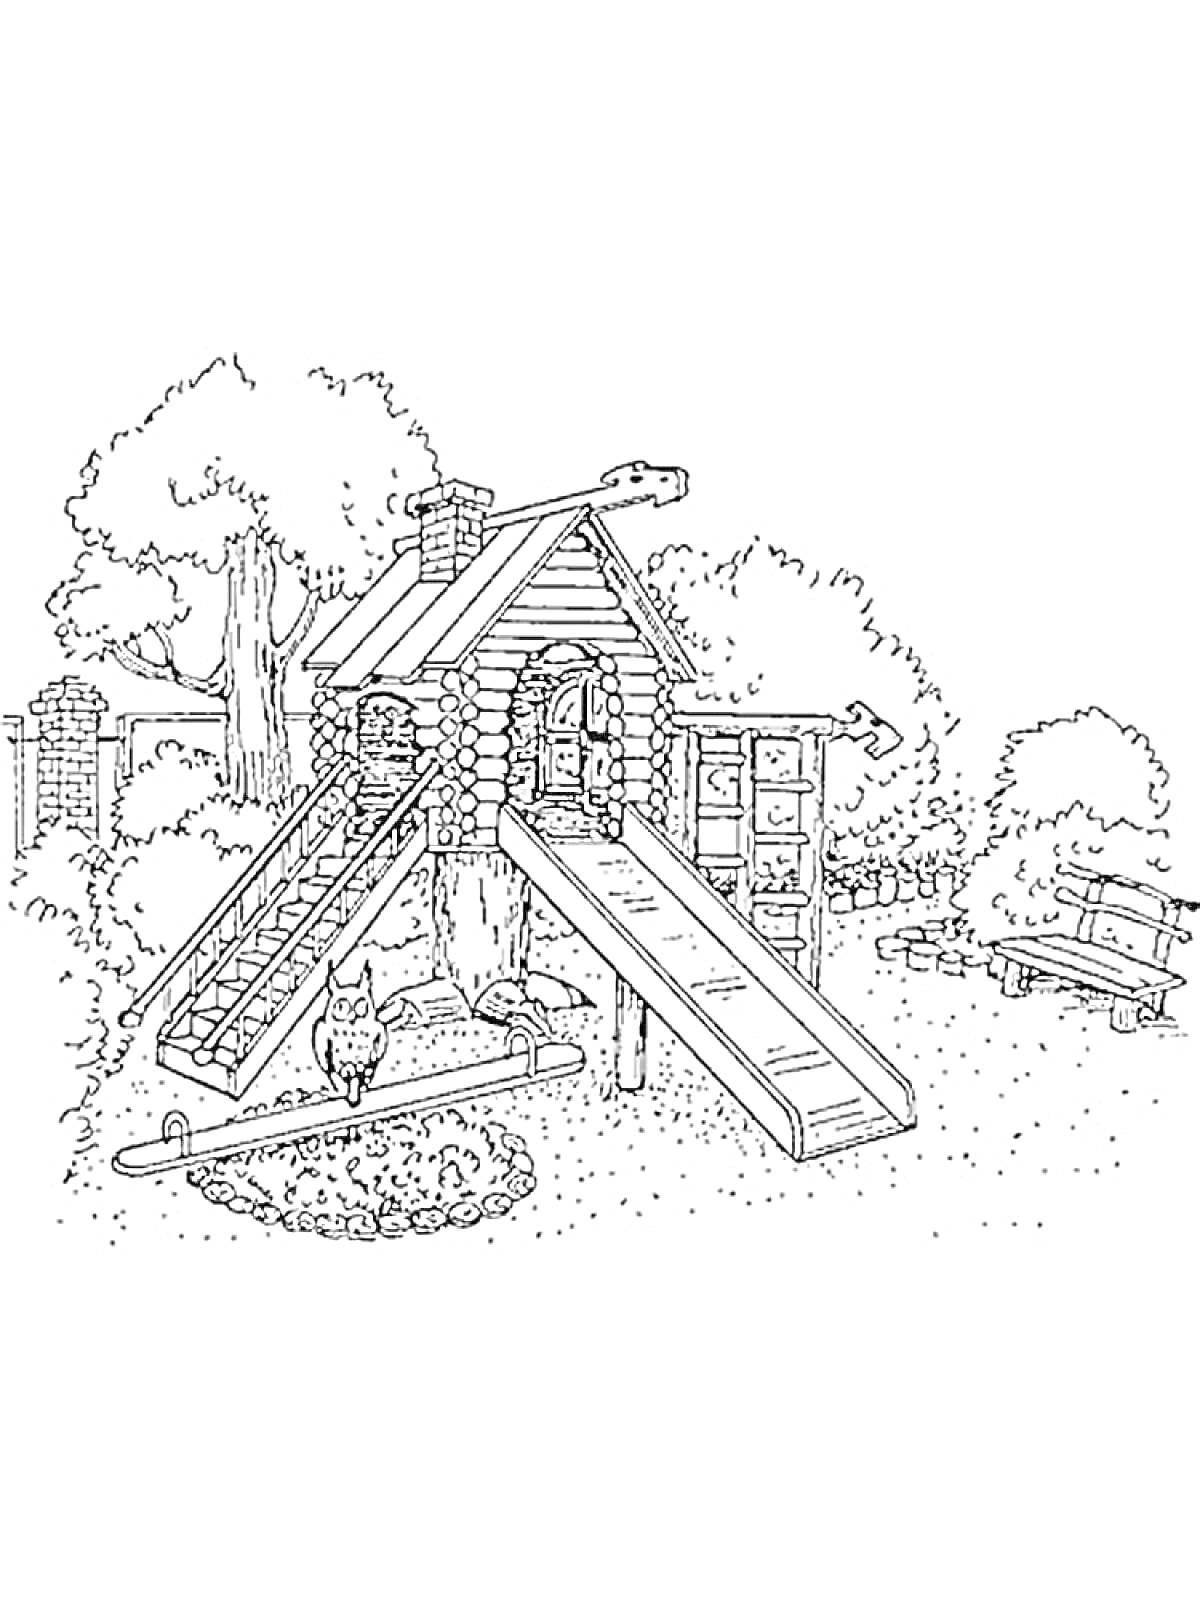 Детская площадка с деревянным домиком, лестницей, горкой, песочницей и лавкой